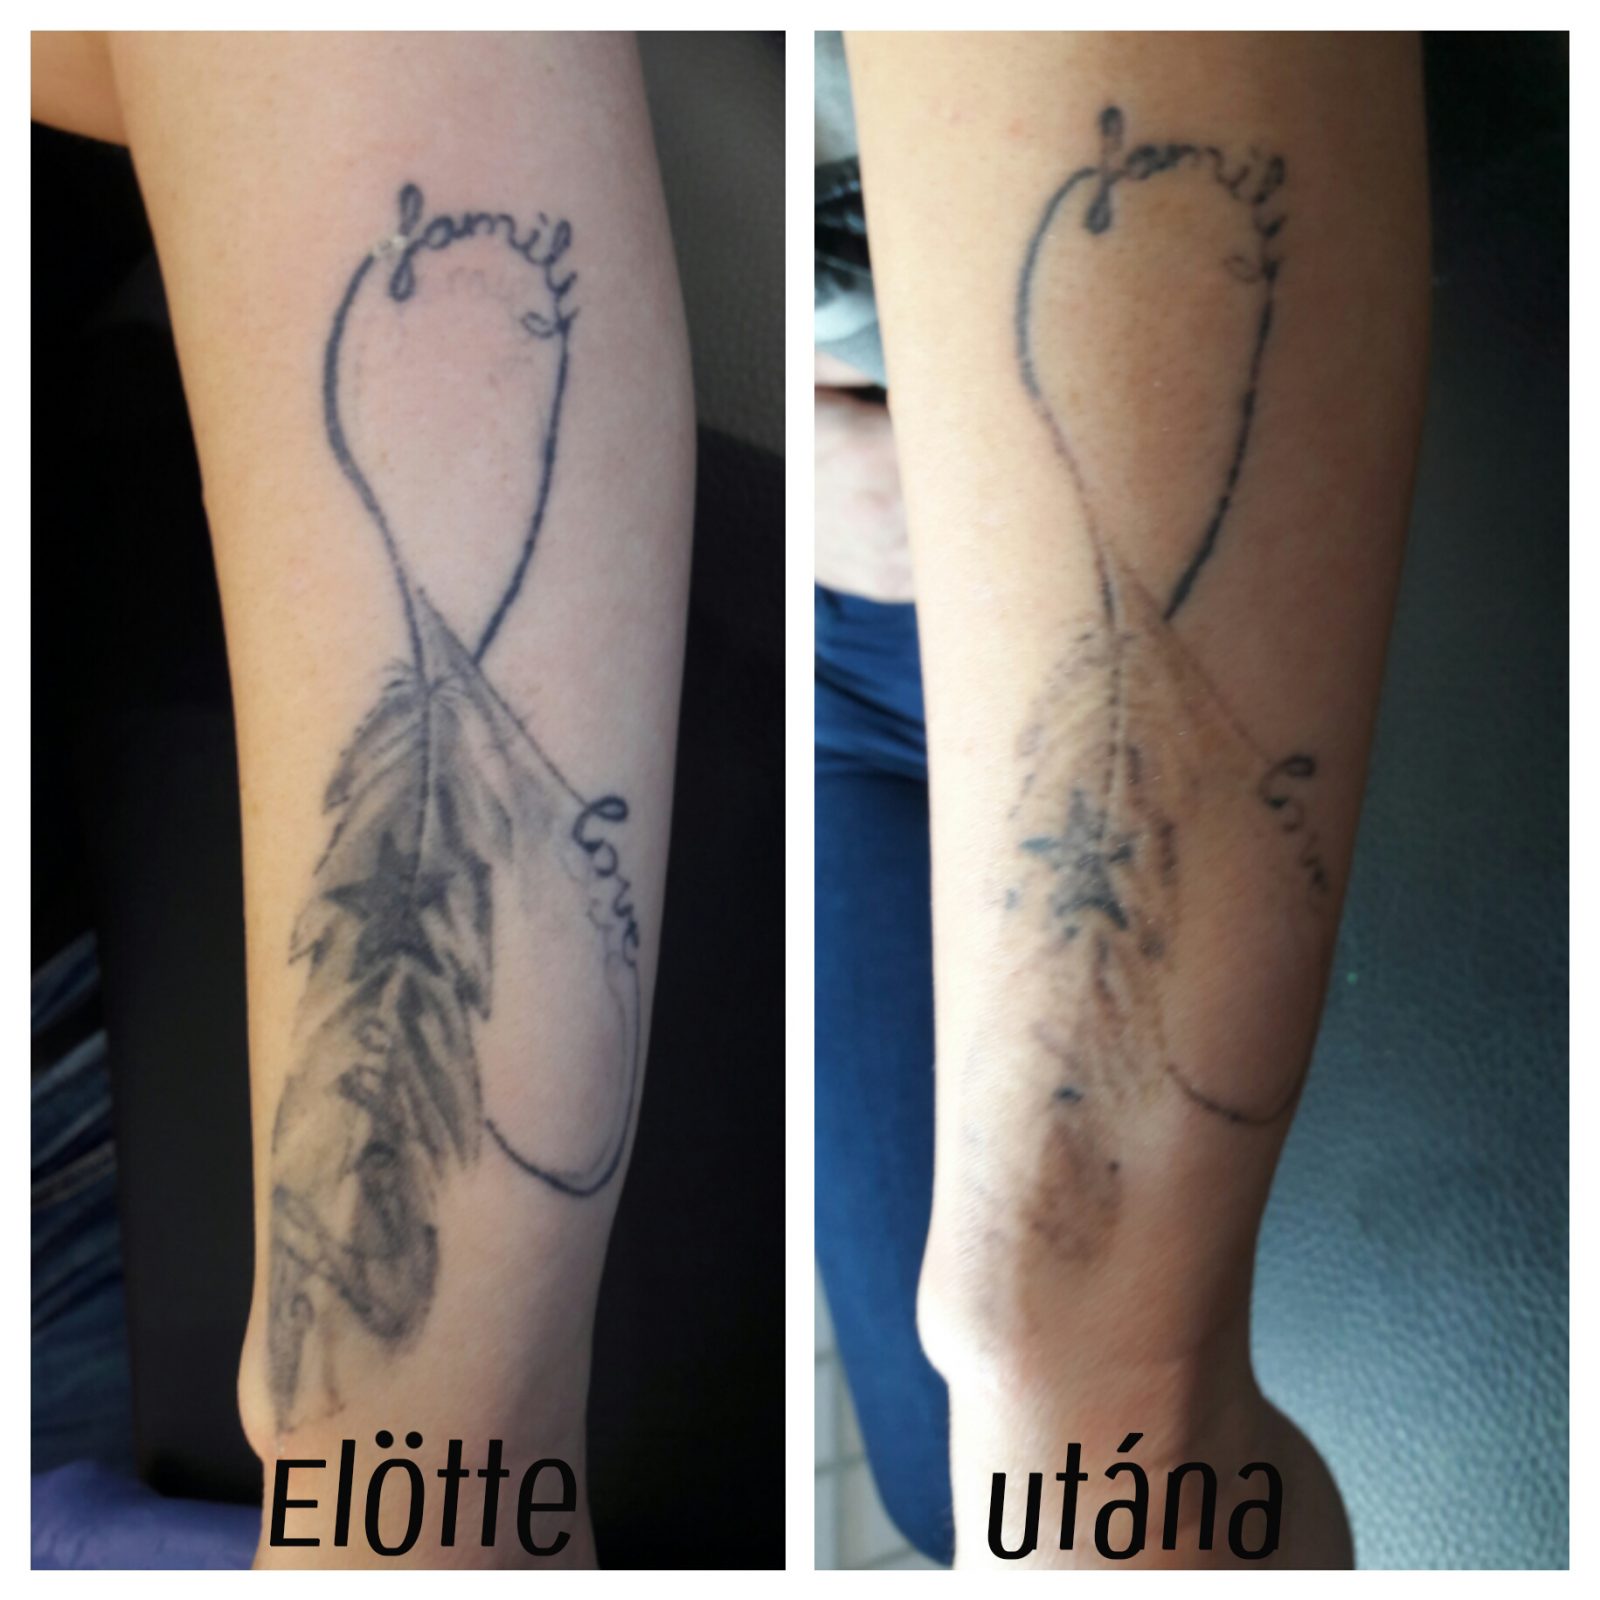 svájci anti aging tetoválás eltávolítás